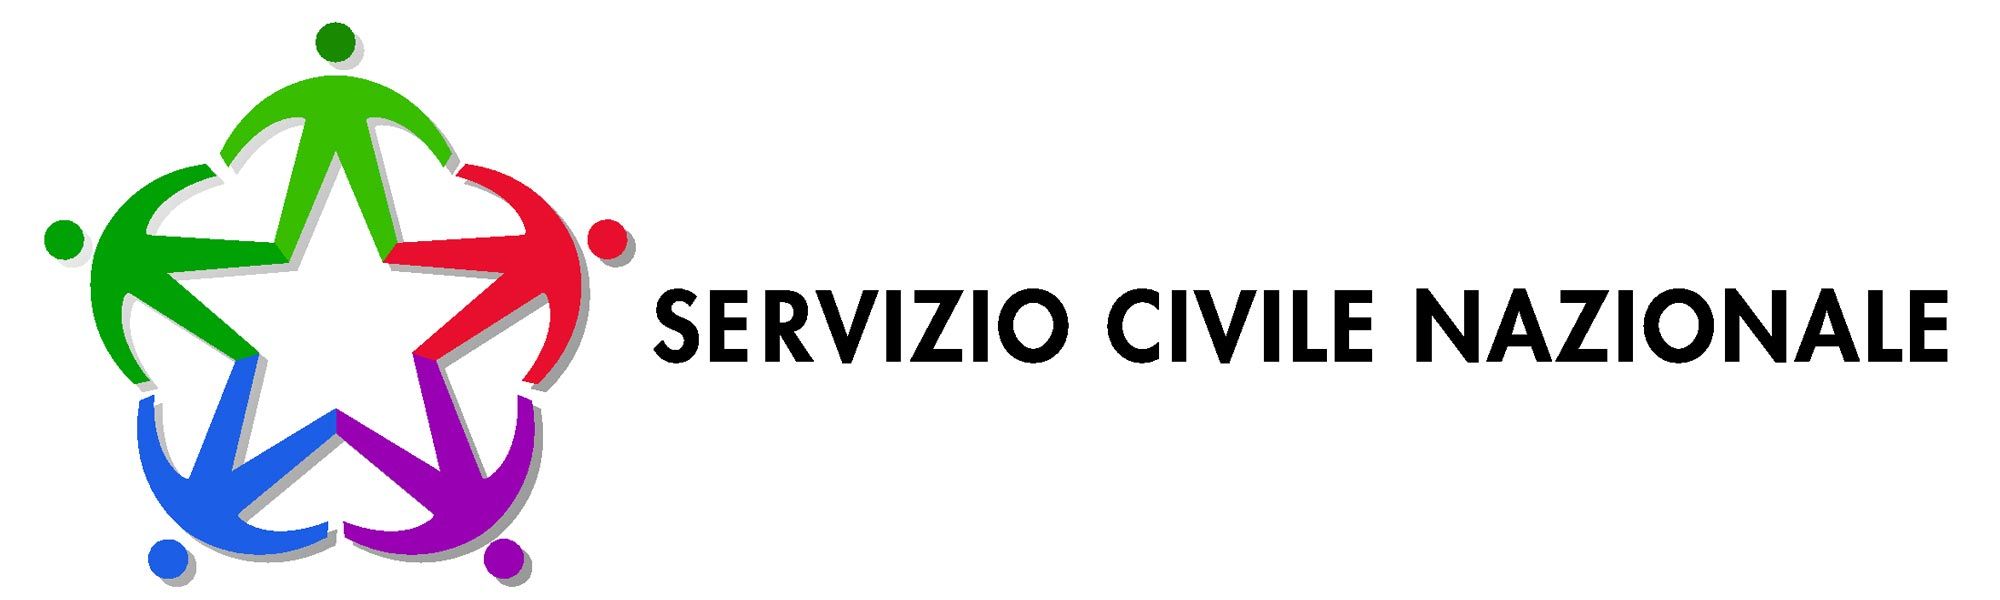 BANDO 2017 SERVIZIO CIVILE